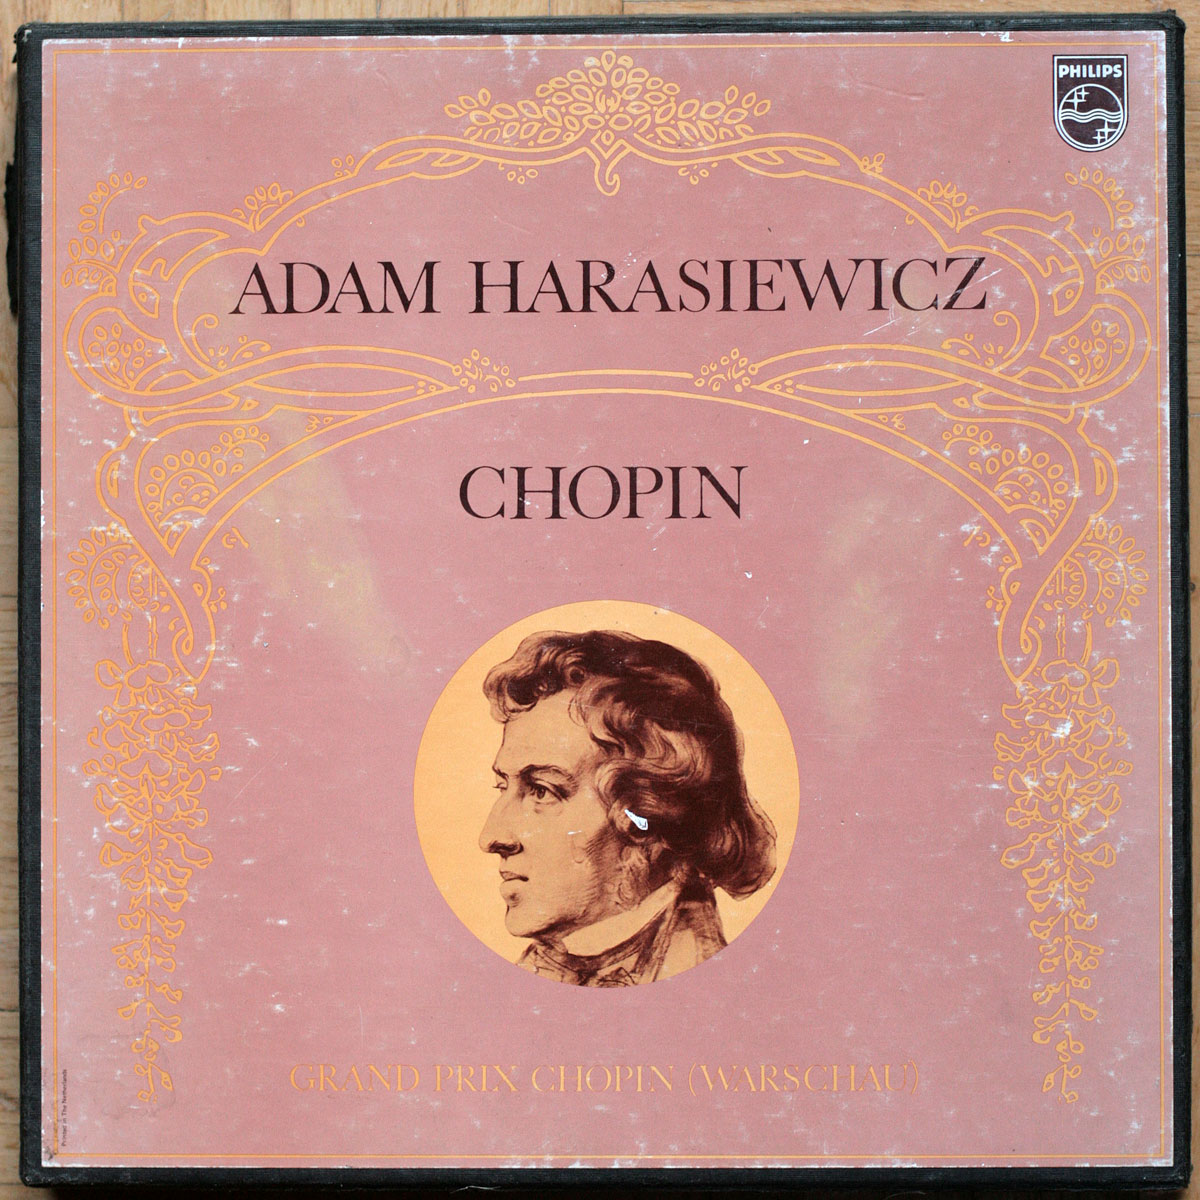 Chopin • Anthologie des œuvres pour piano • Philips 6747 017 • Adam Harasiewicz • Wiener Symphoniker • Heinrich Hollreiser